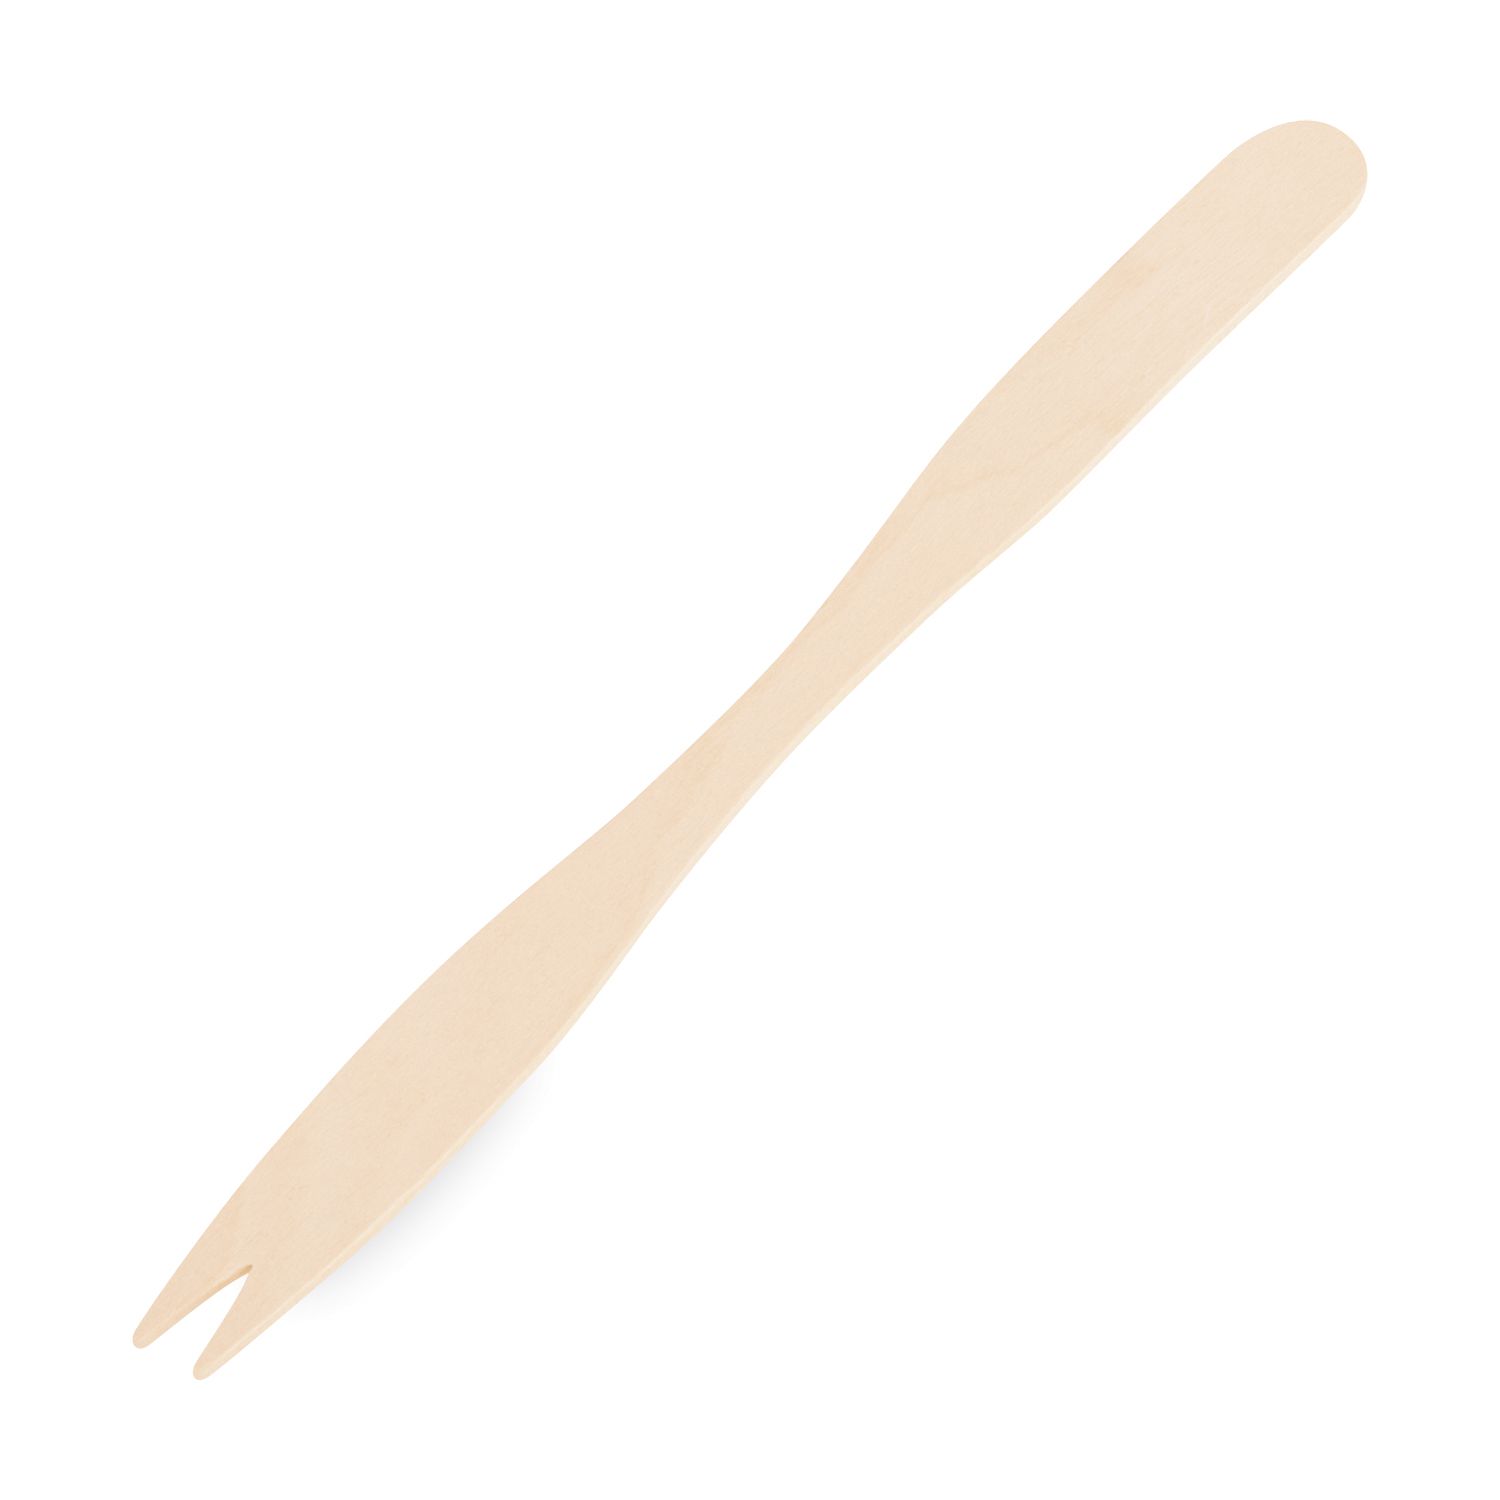 Vidlička desiatová dlhá z dreva 14 cm [500 ks]